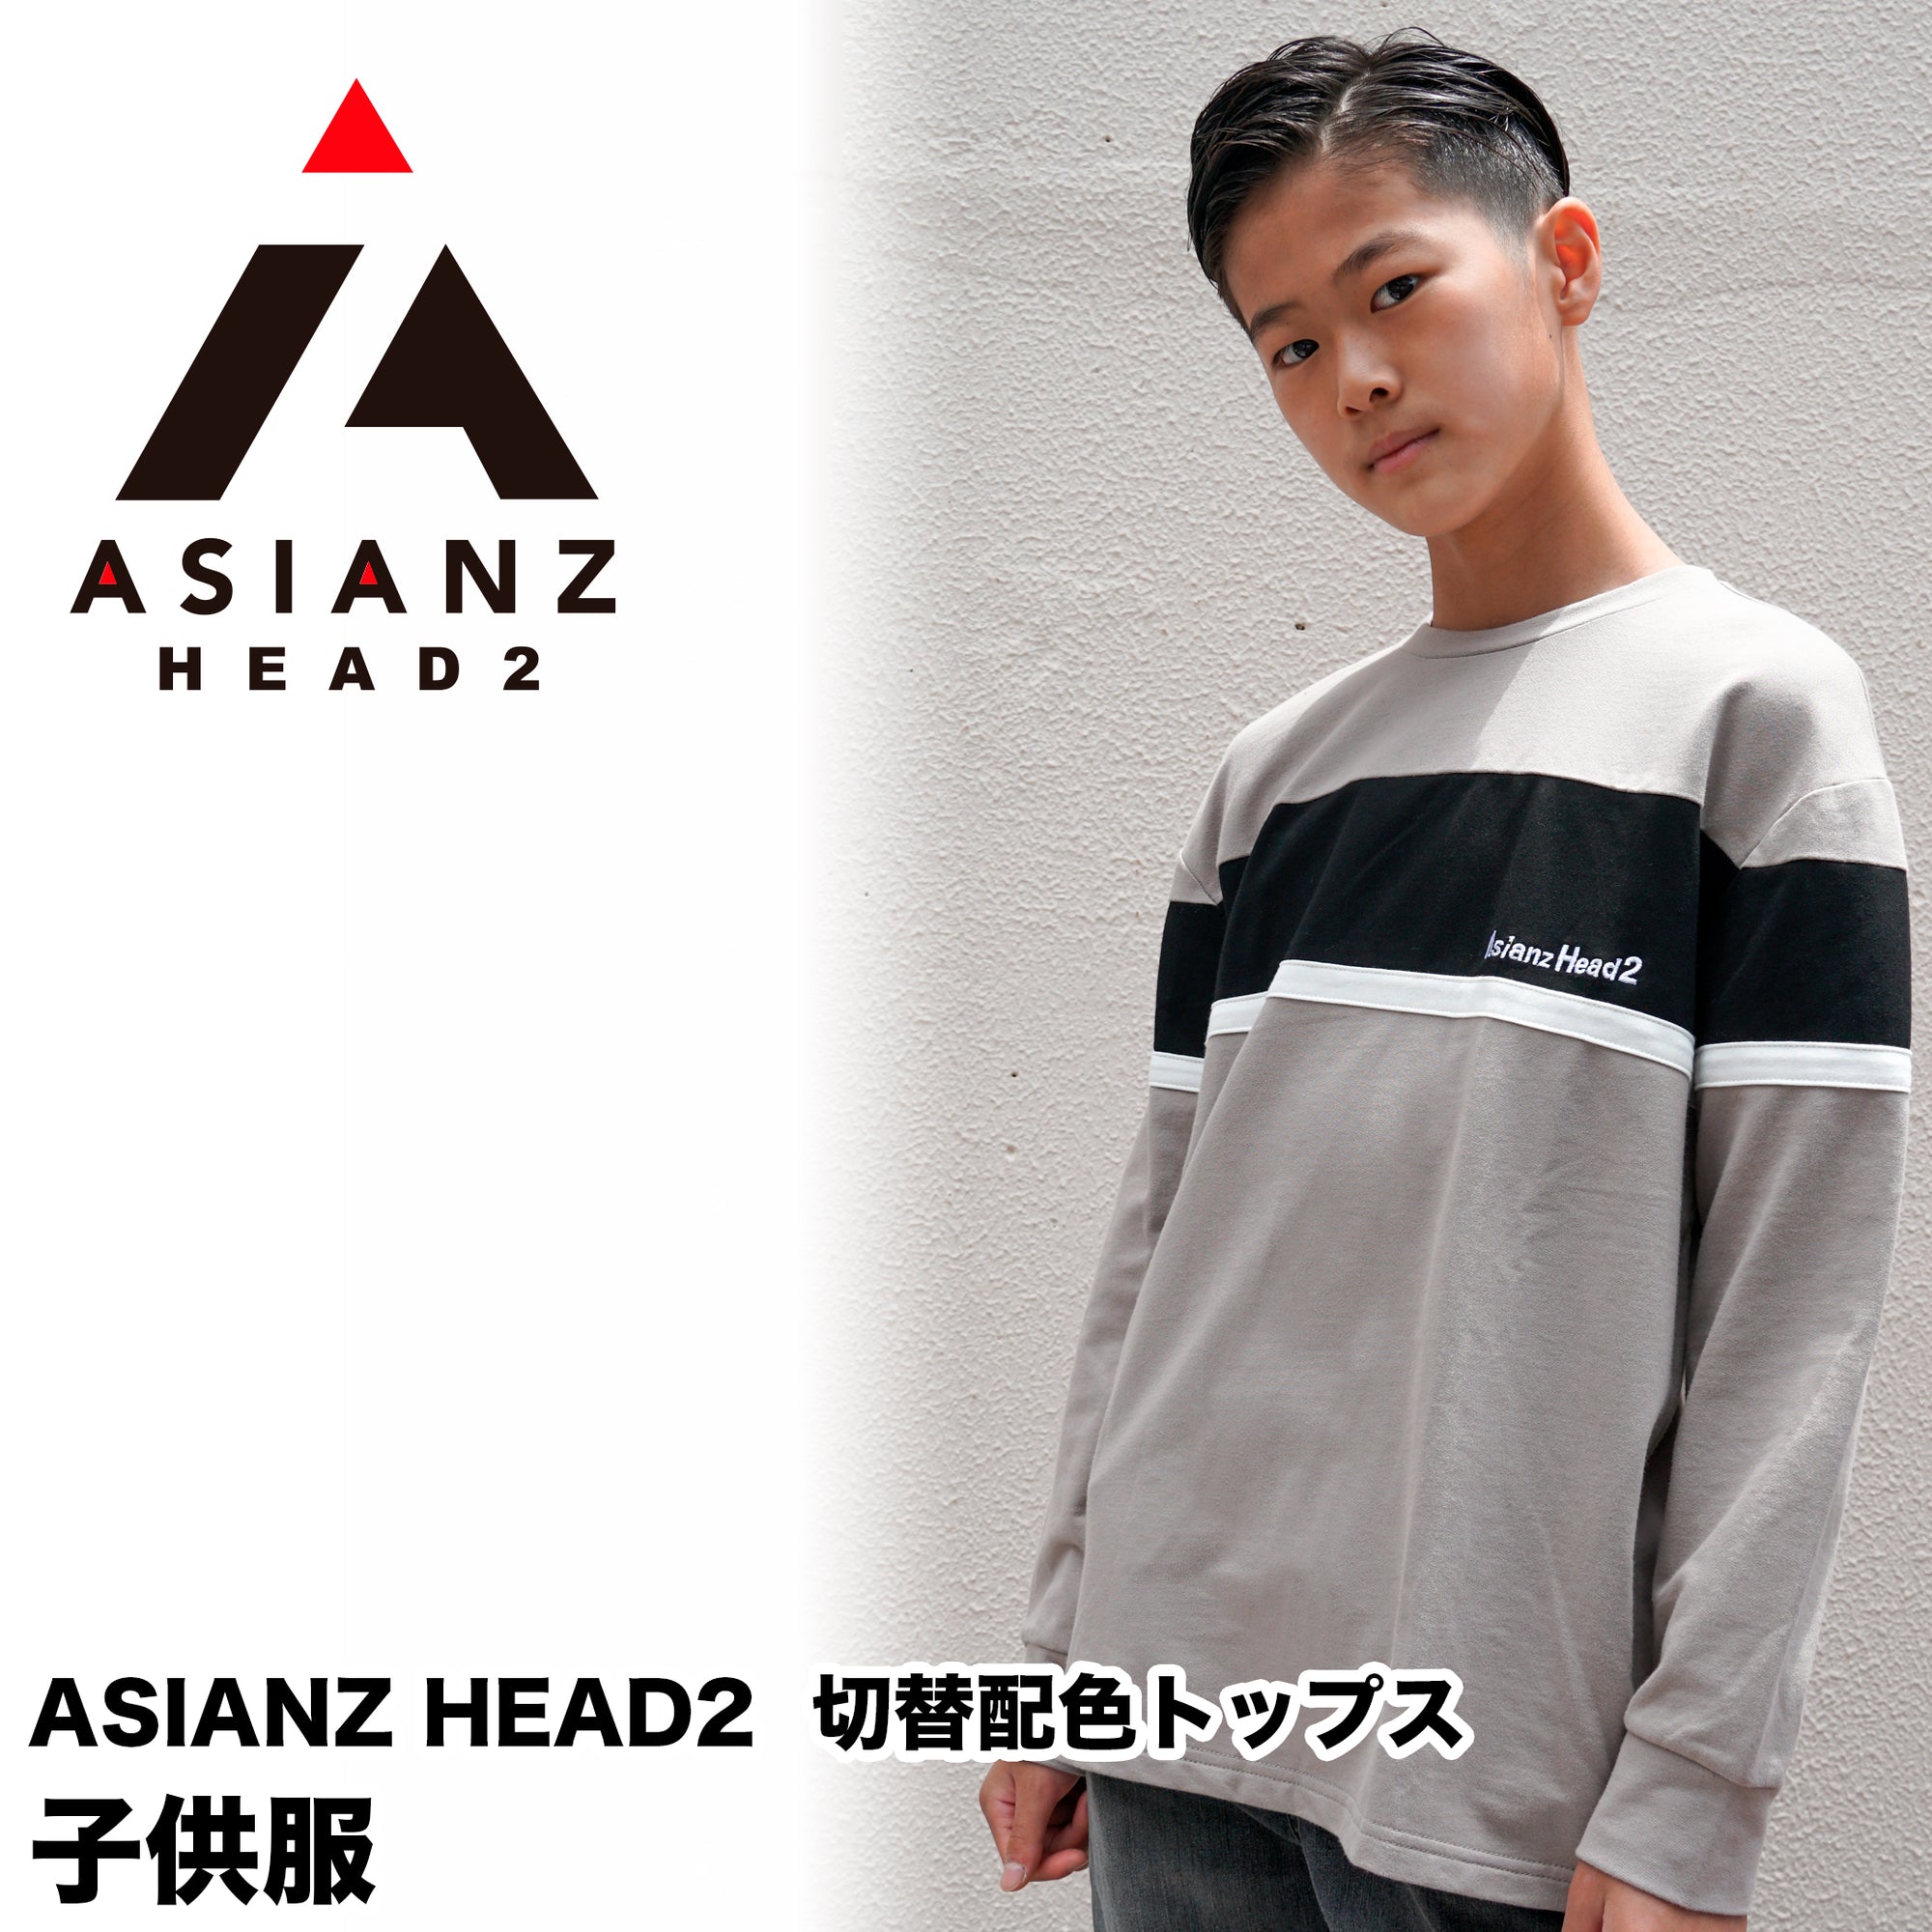 (40%オフ! セール商品)ASIANZ HEAD2 切替配色トップス キッズウェアー